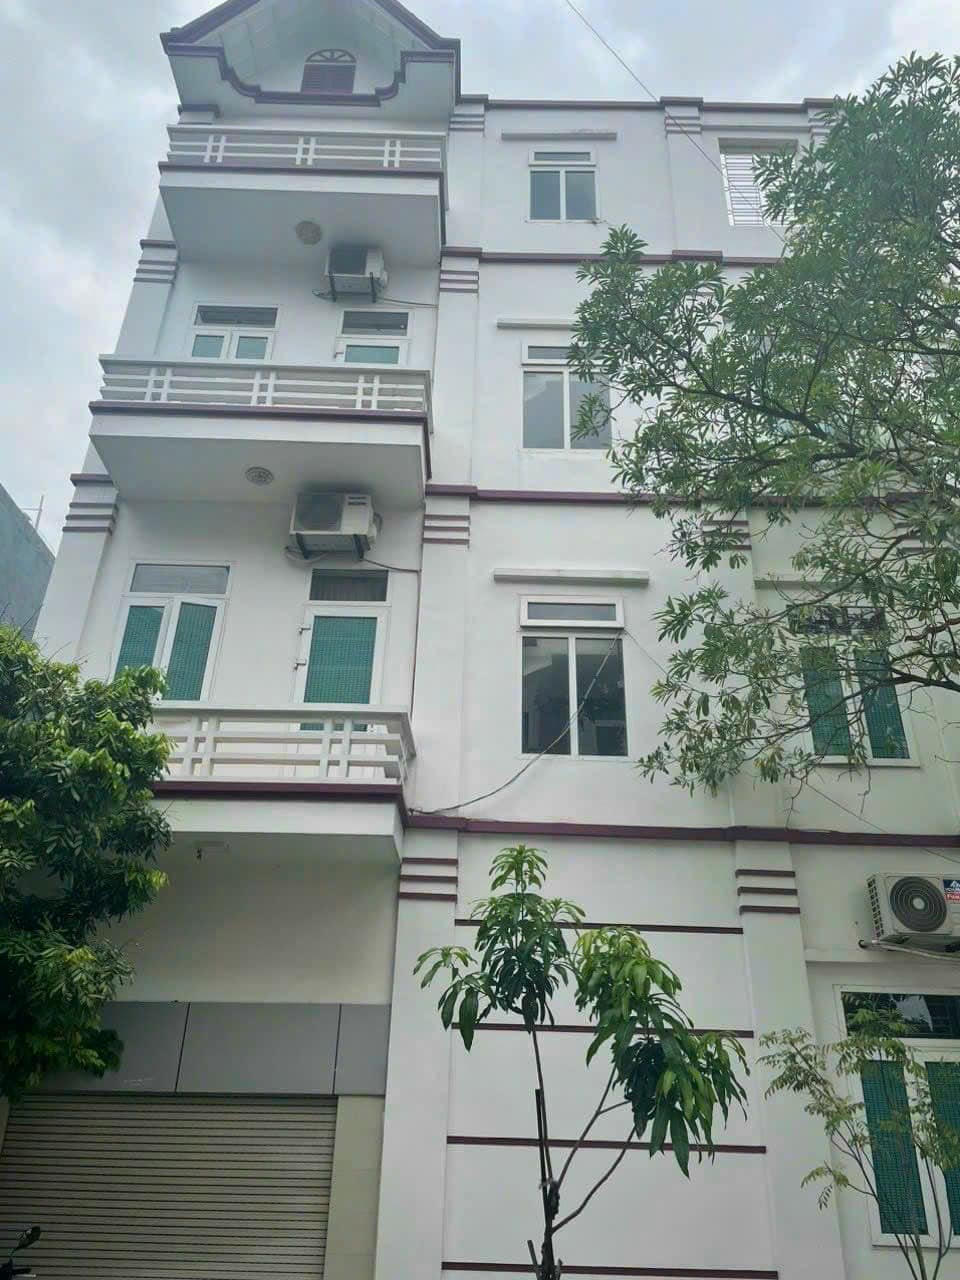 Bán nhà 4 tầng lô góc KĐT Vạn Phúc, ph Thanh Bình, TP HD 75m2, đường 13.5m, 4 phòng ngủ